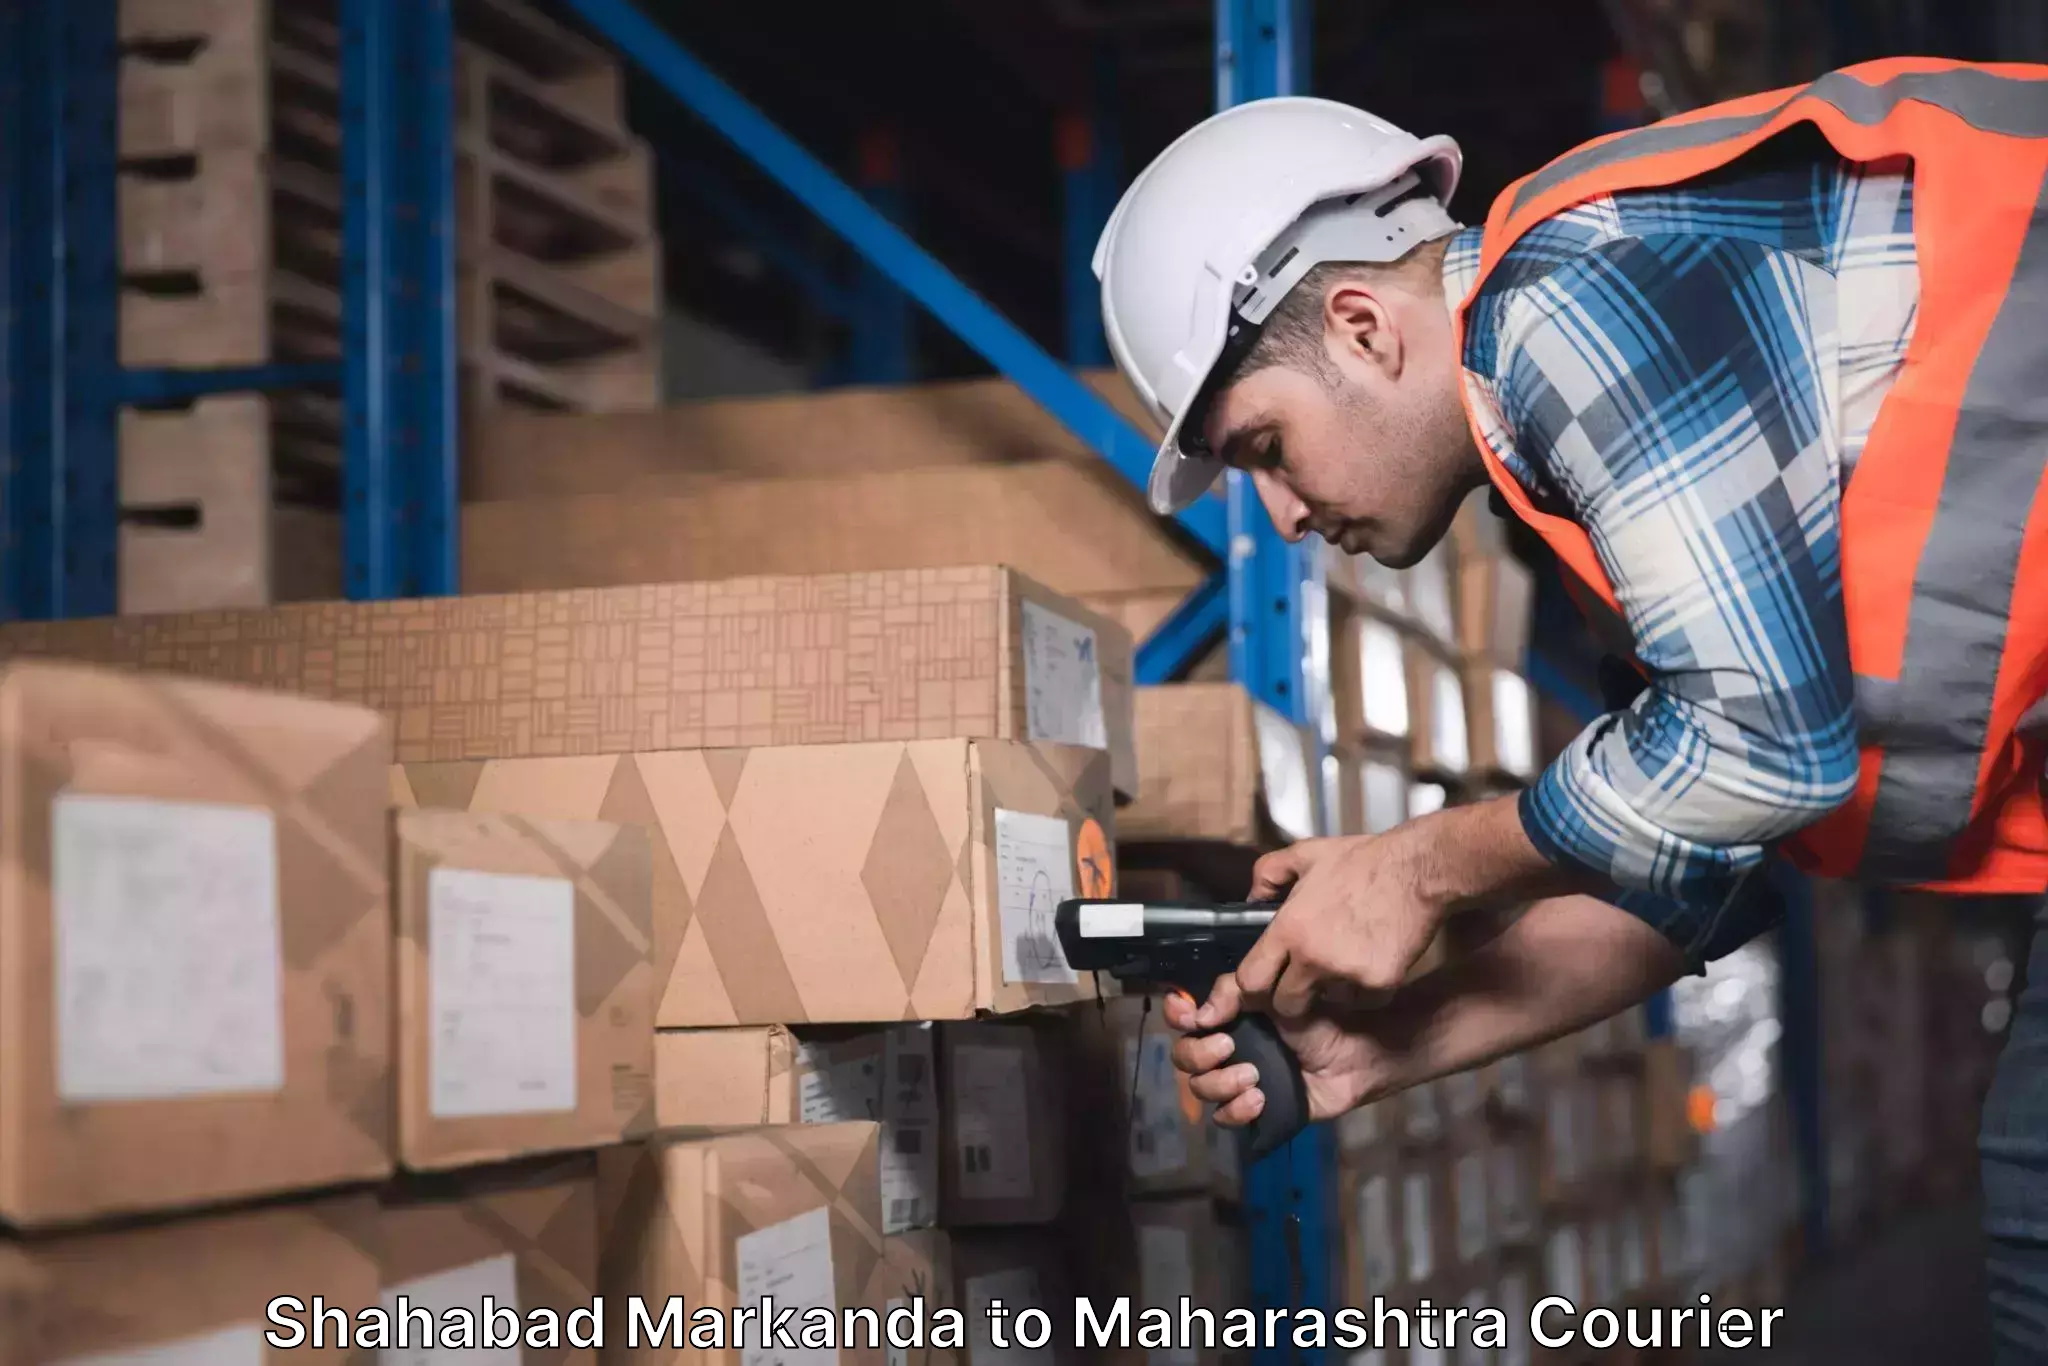 High-quality delivery services in Shahabad Markanda to Maharashtra